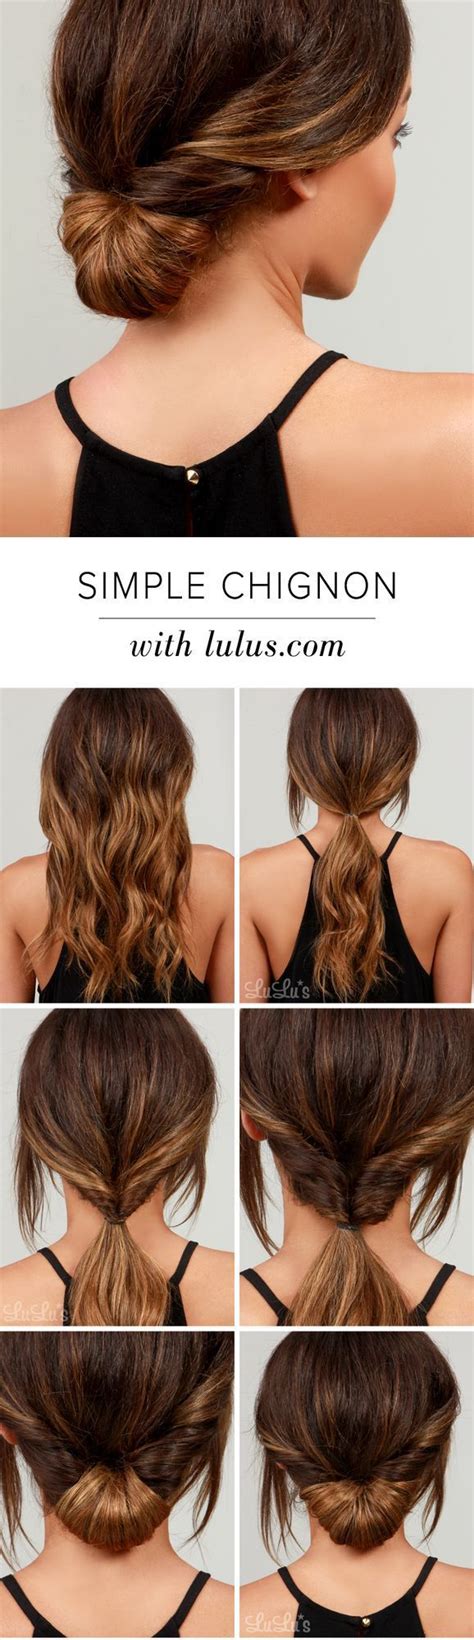 Lulus How To Simple Chignon Hair Tutorial Fashion Blog Hair Styles Chignon Hair